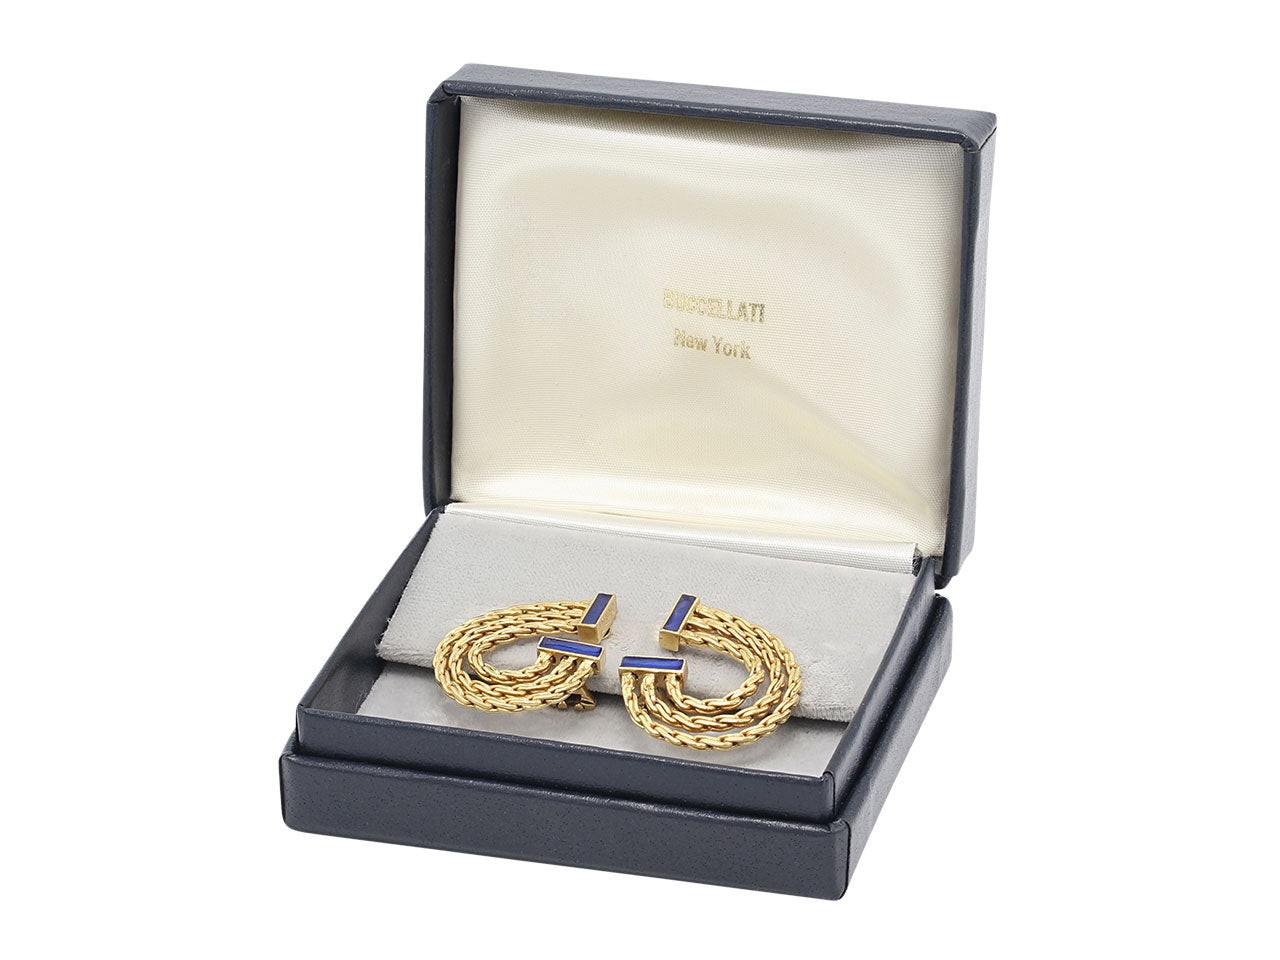 Buccellati Blue Enamel Earrings in 18K Gold